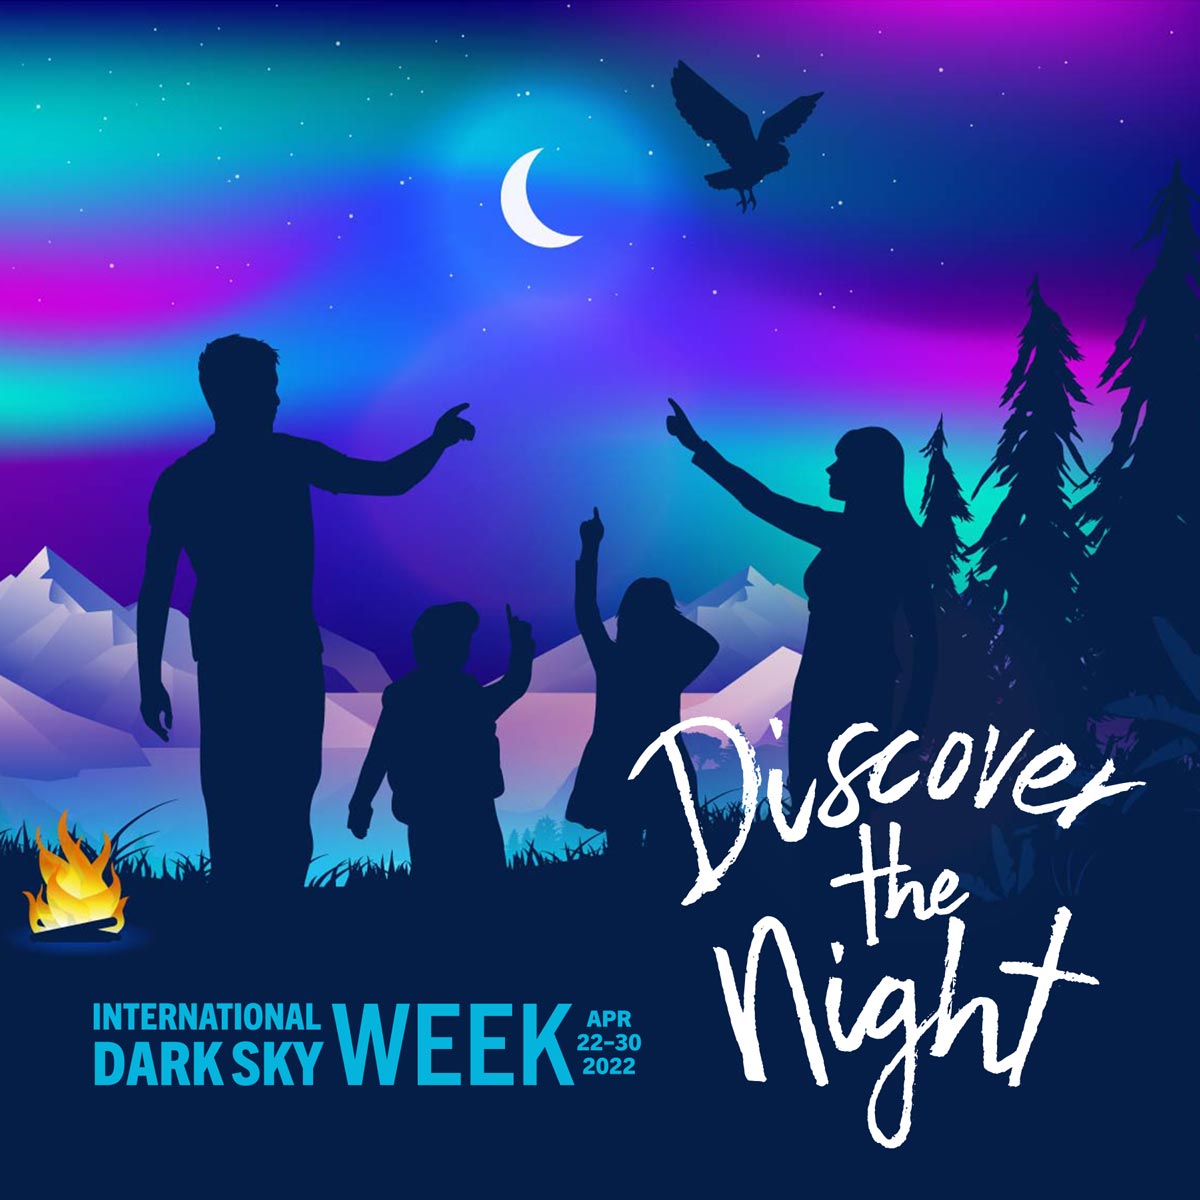 International Dark Sky Week 2022